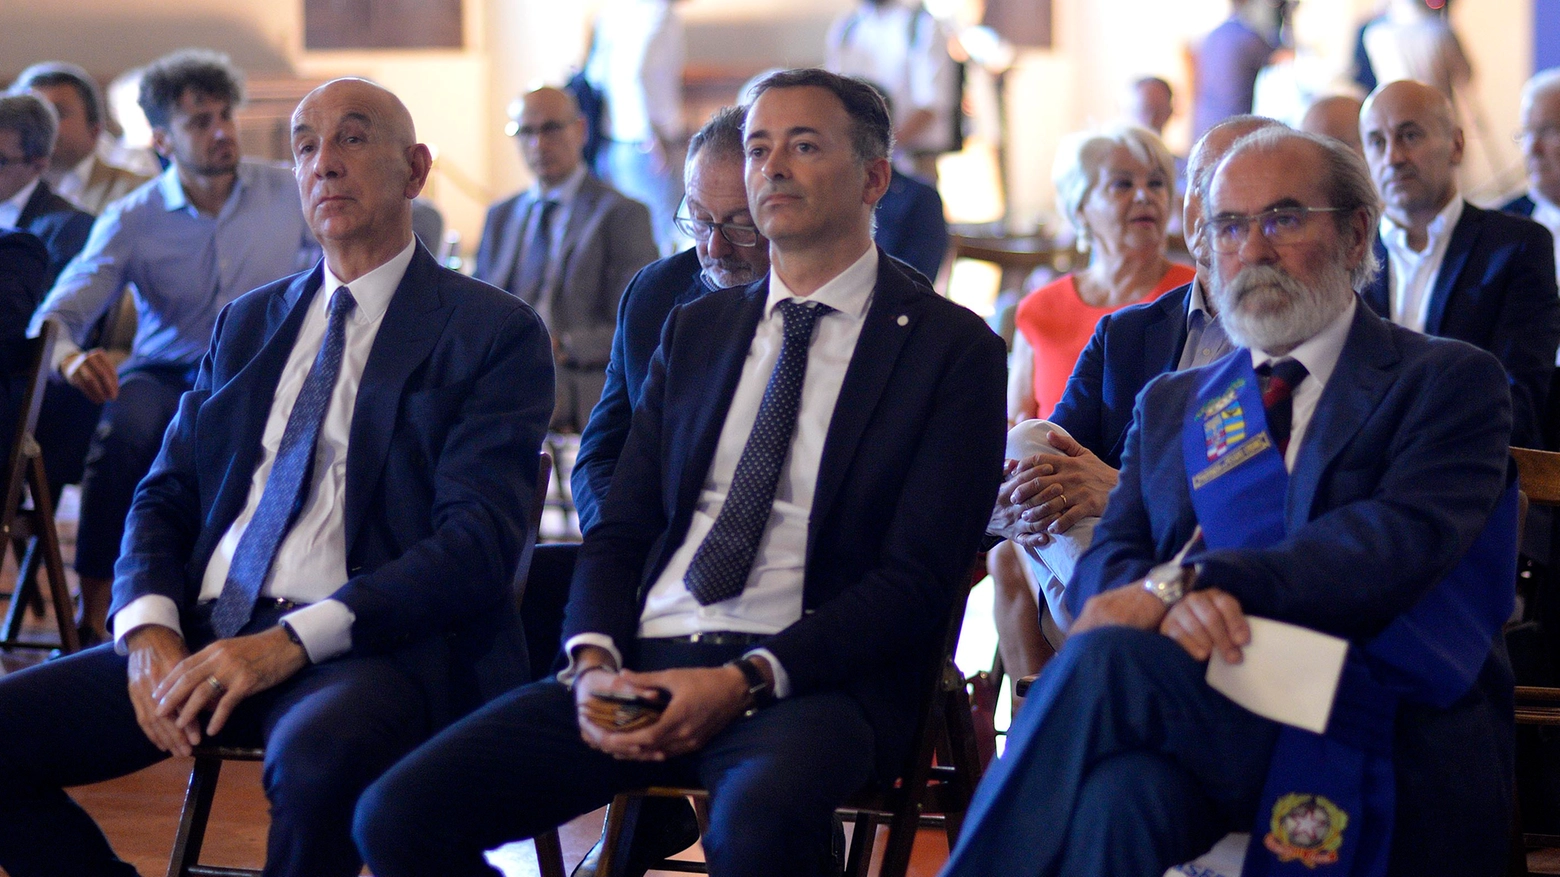 Da sinistra: Mauro Tiviroli, amministratore delegato di Marche Multiservizi, Andrea Pierotti, presidente dell’azienda, e Giuseppe Paolini, presidente della Provincia